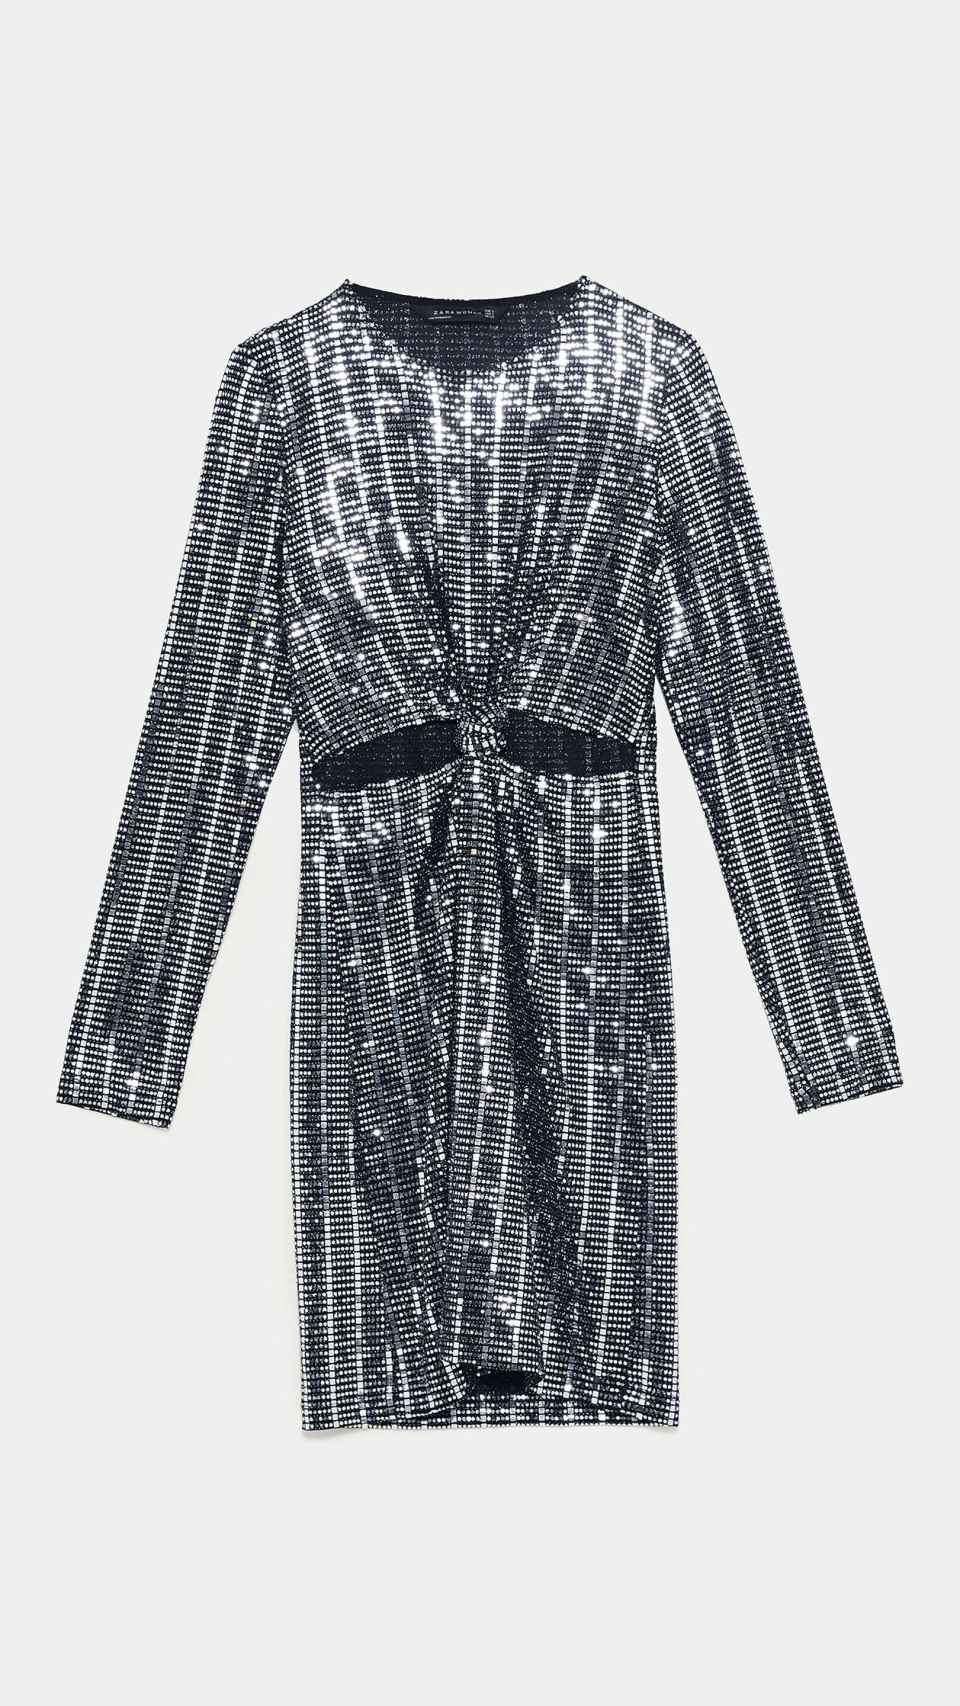 El vestido perfecto para Nochevieja es de Zara y cuesta menos de 30 euros